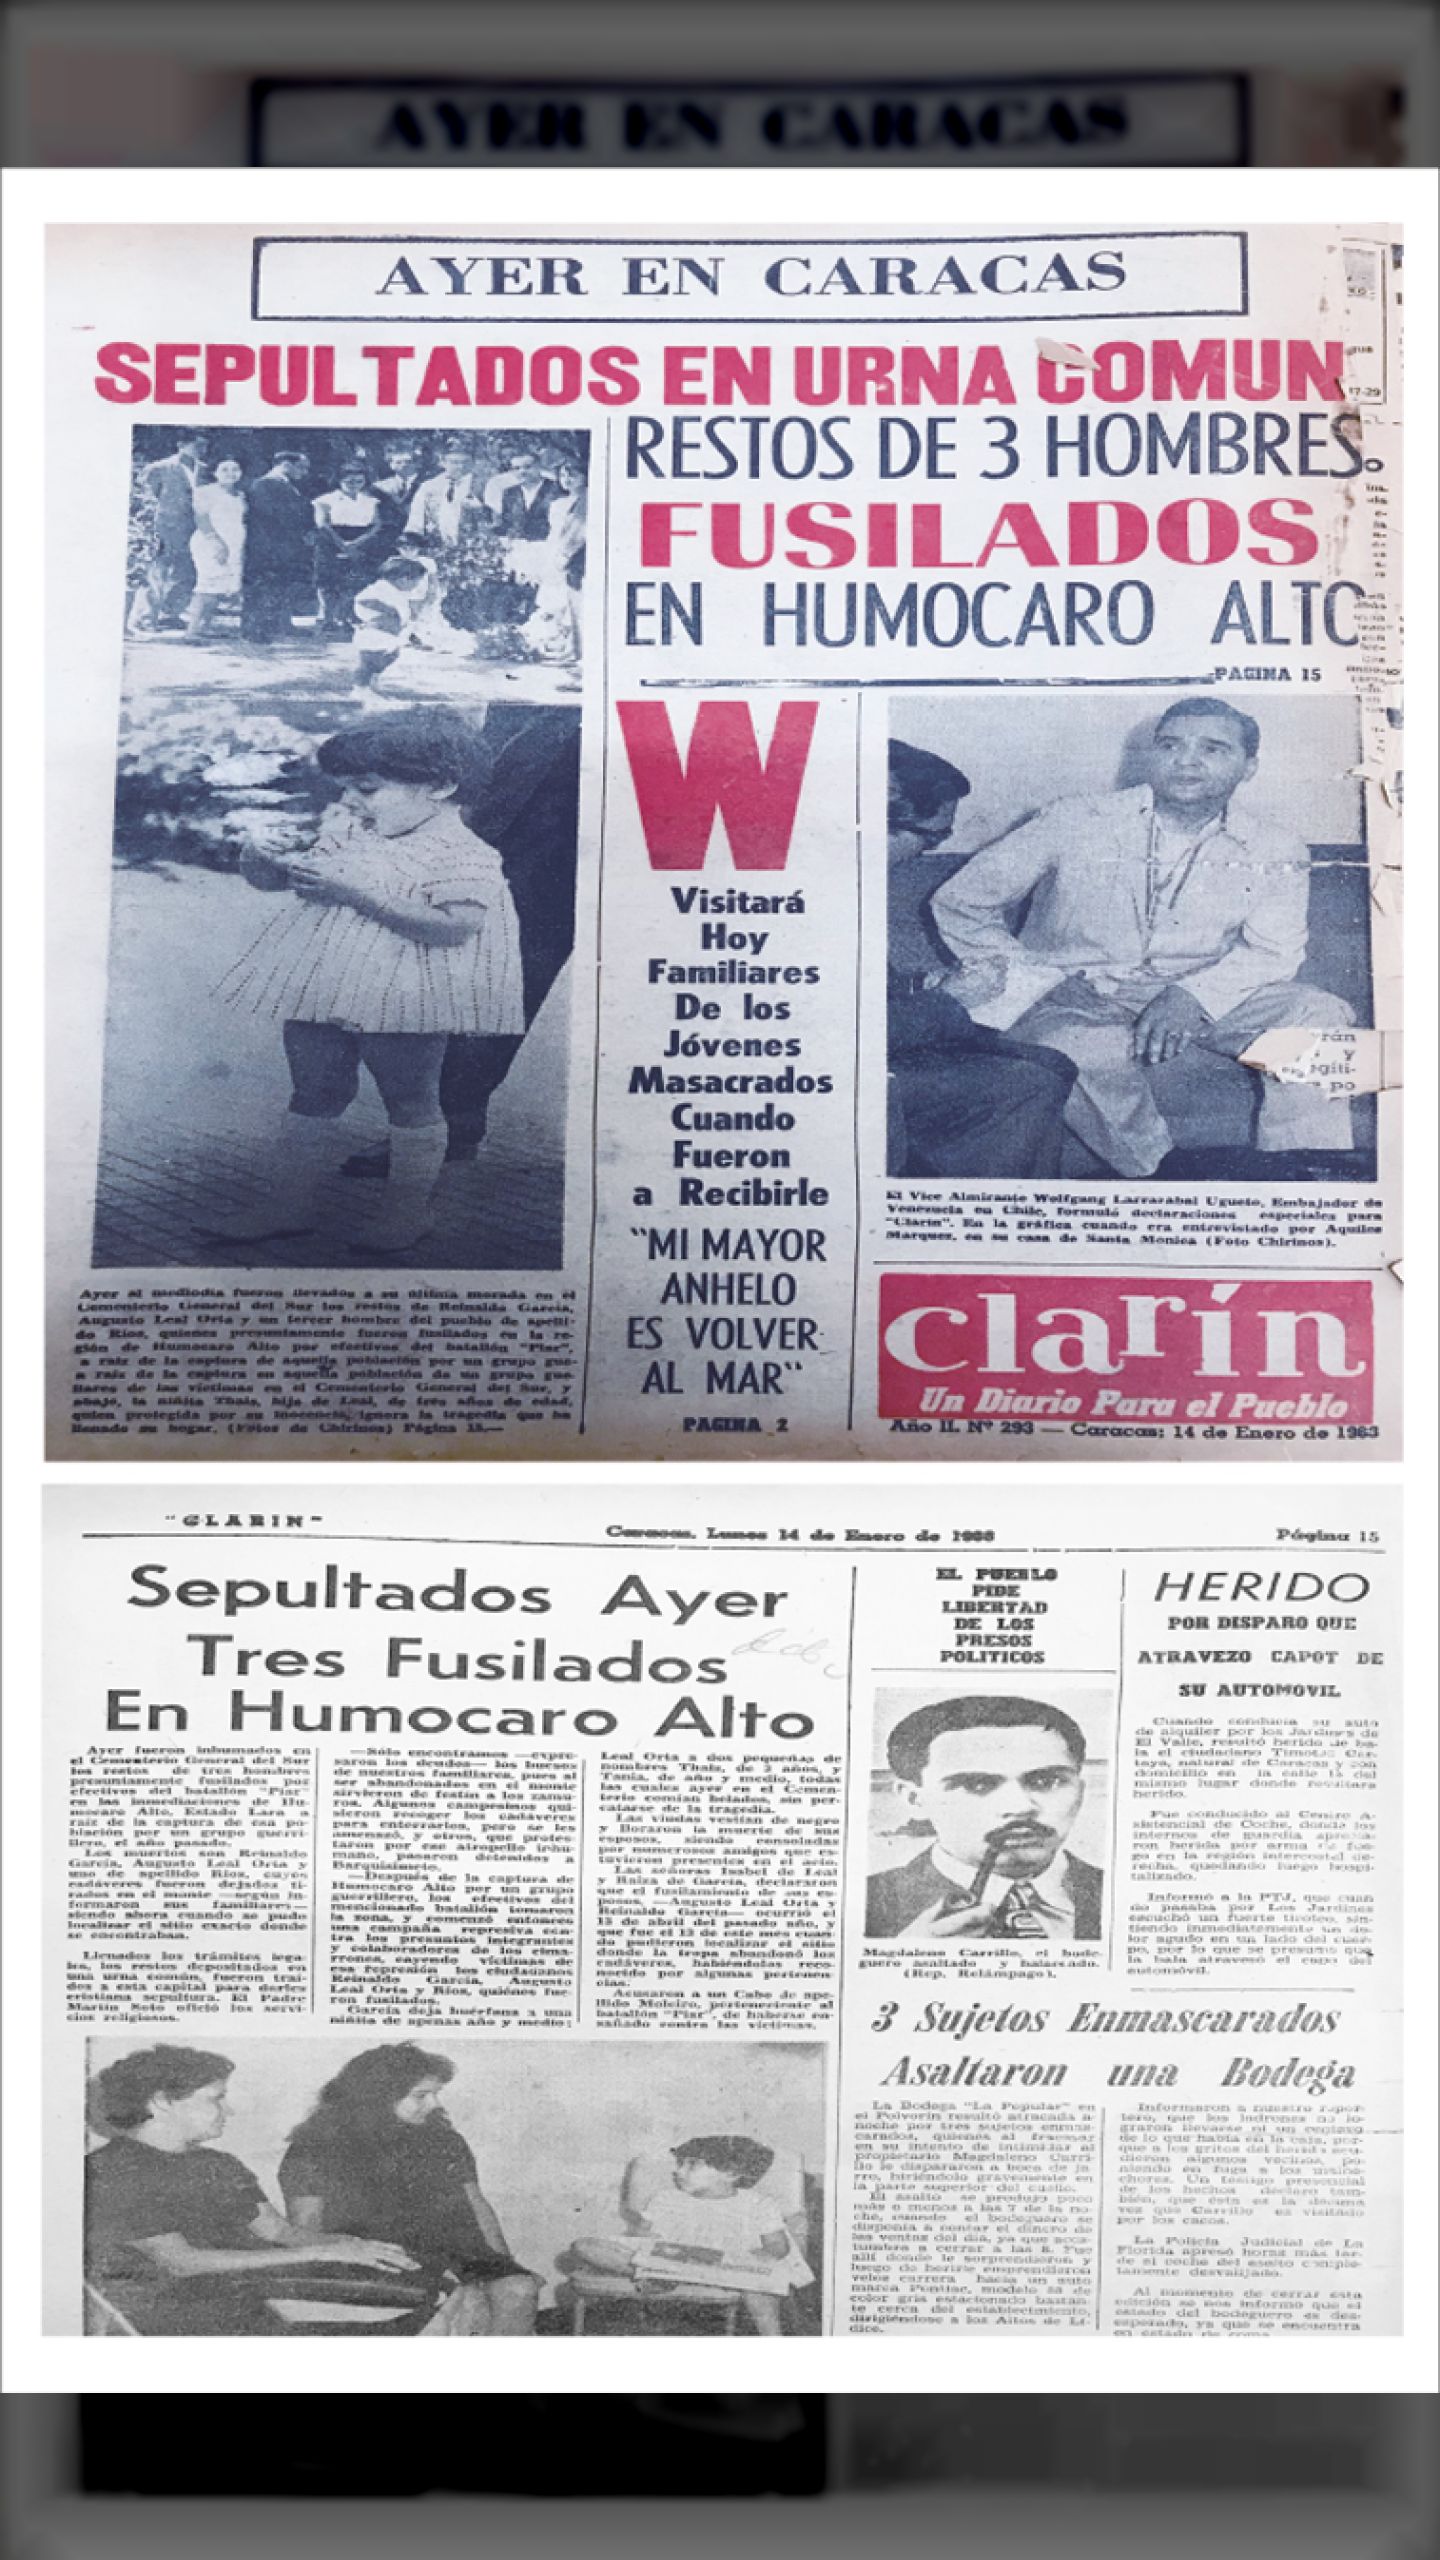 SEPULTADOS EN URNA COMÚN RESTOS DE 3 HOMBRES FUSILADOS EN HUMOCARO ALTO (Diario el Clarín, 14 de enero de 1963)